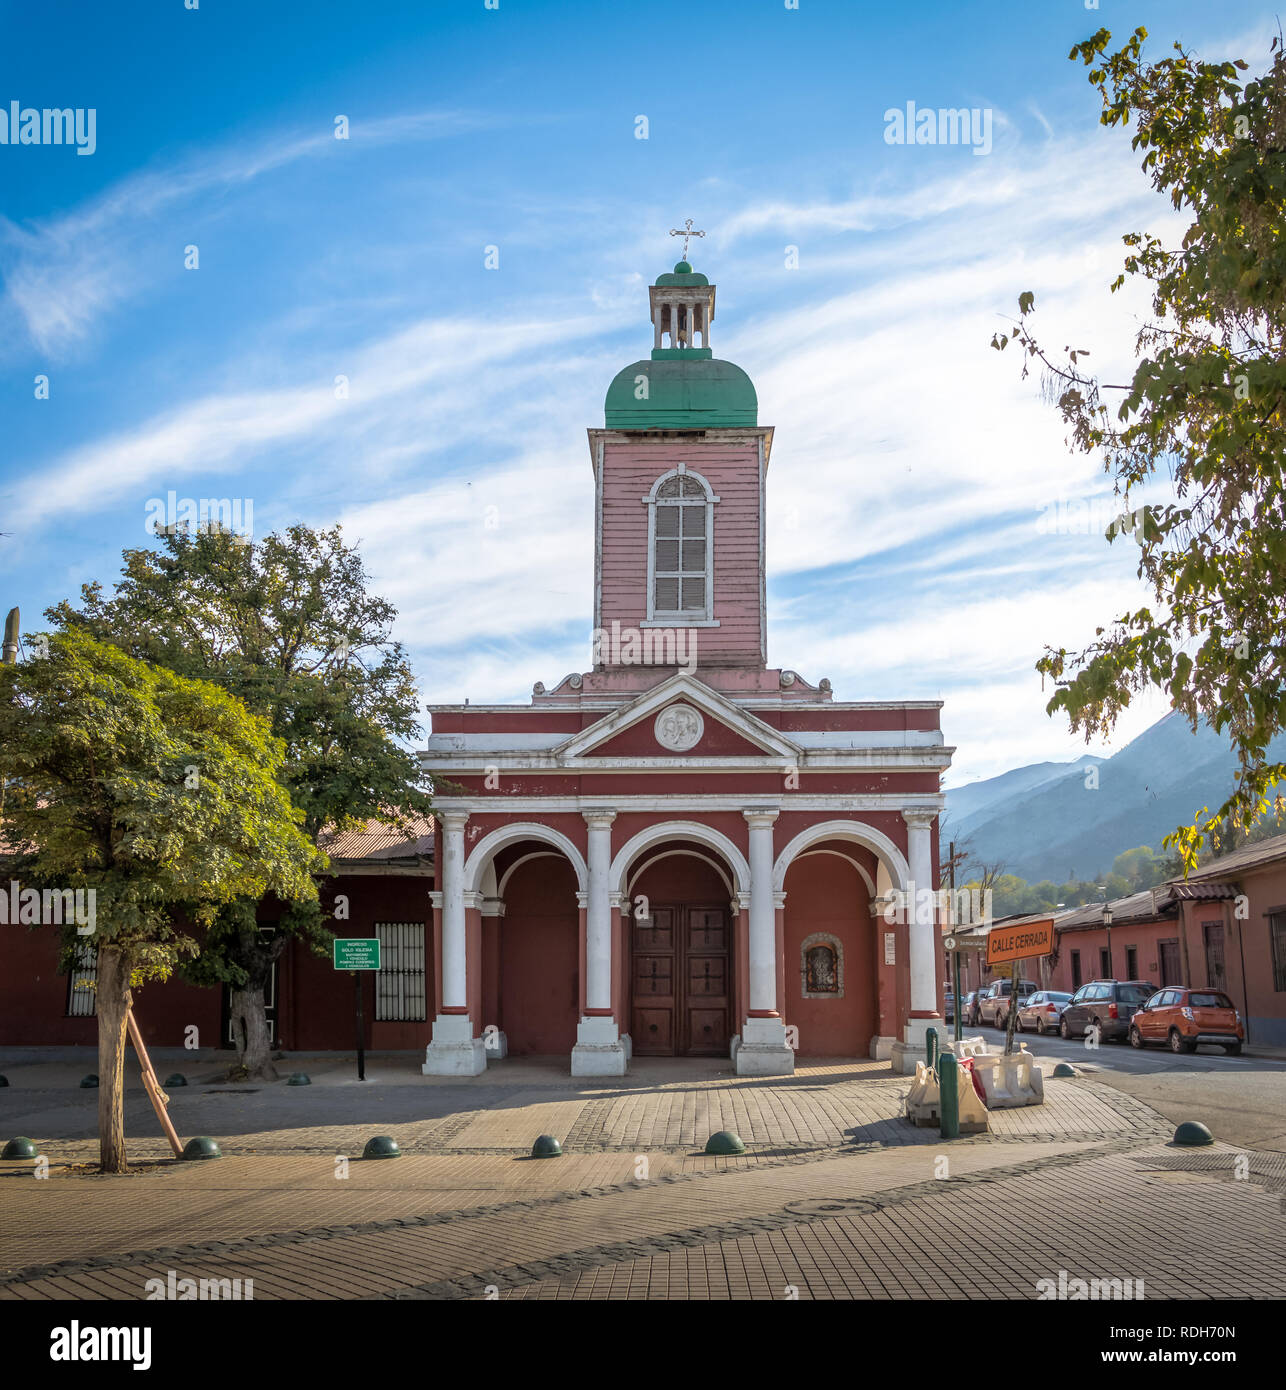 Church in San Jose de Maipo town at Cajon del Maipo - Chile Stock Photo